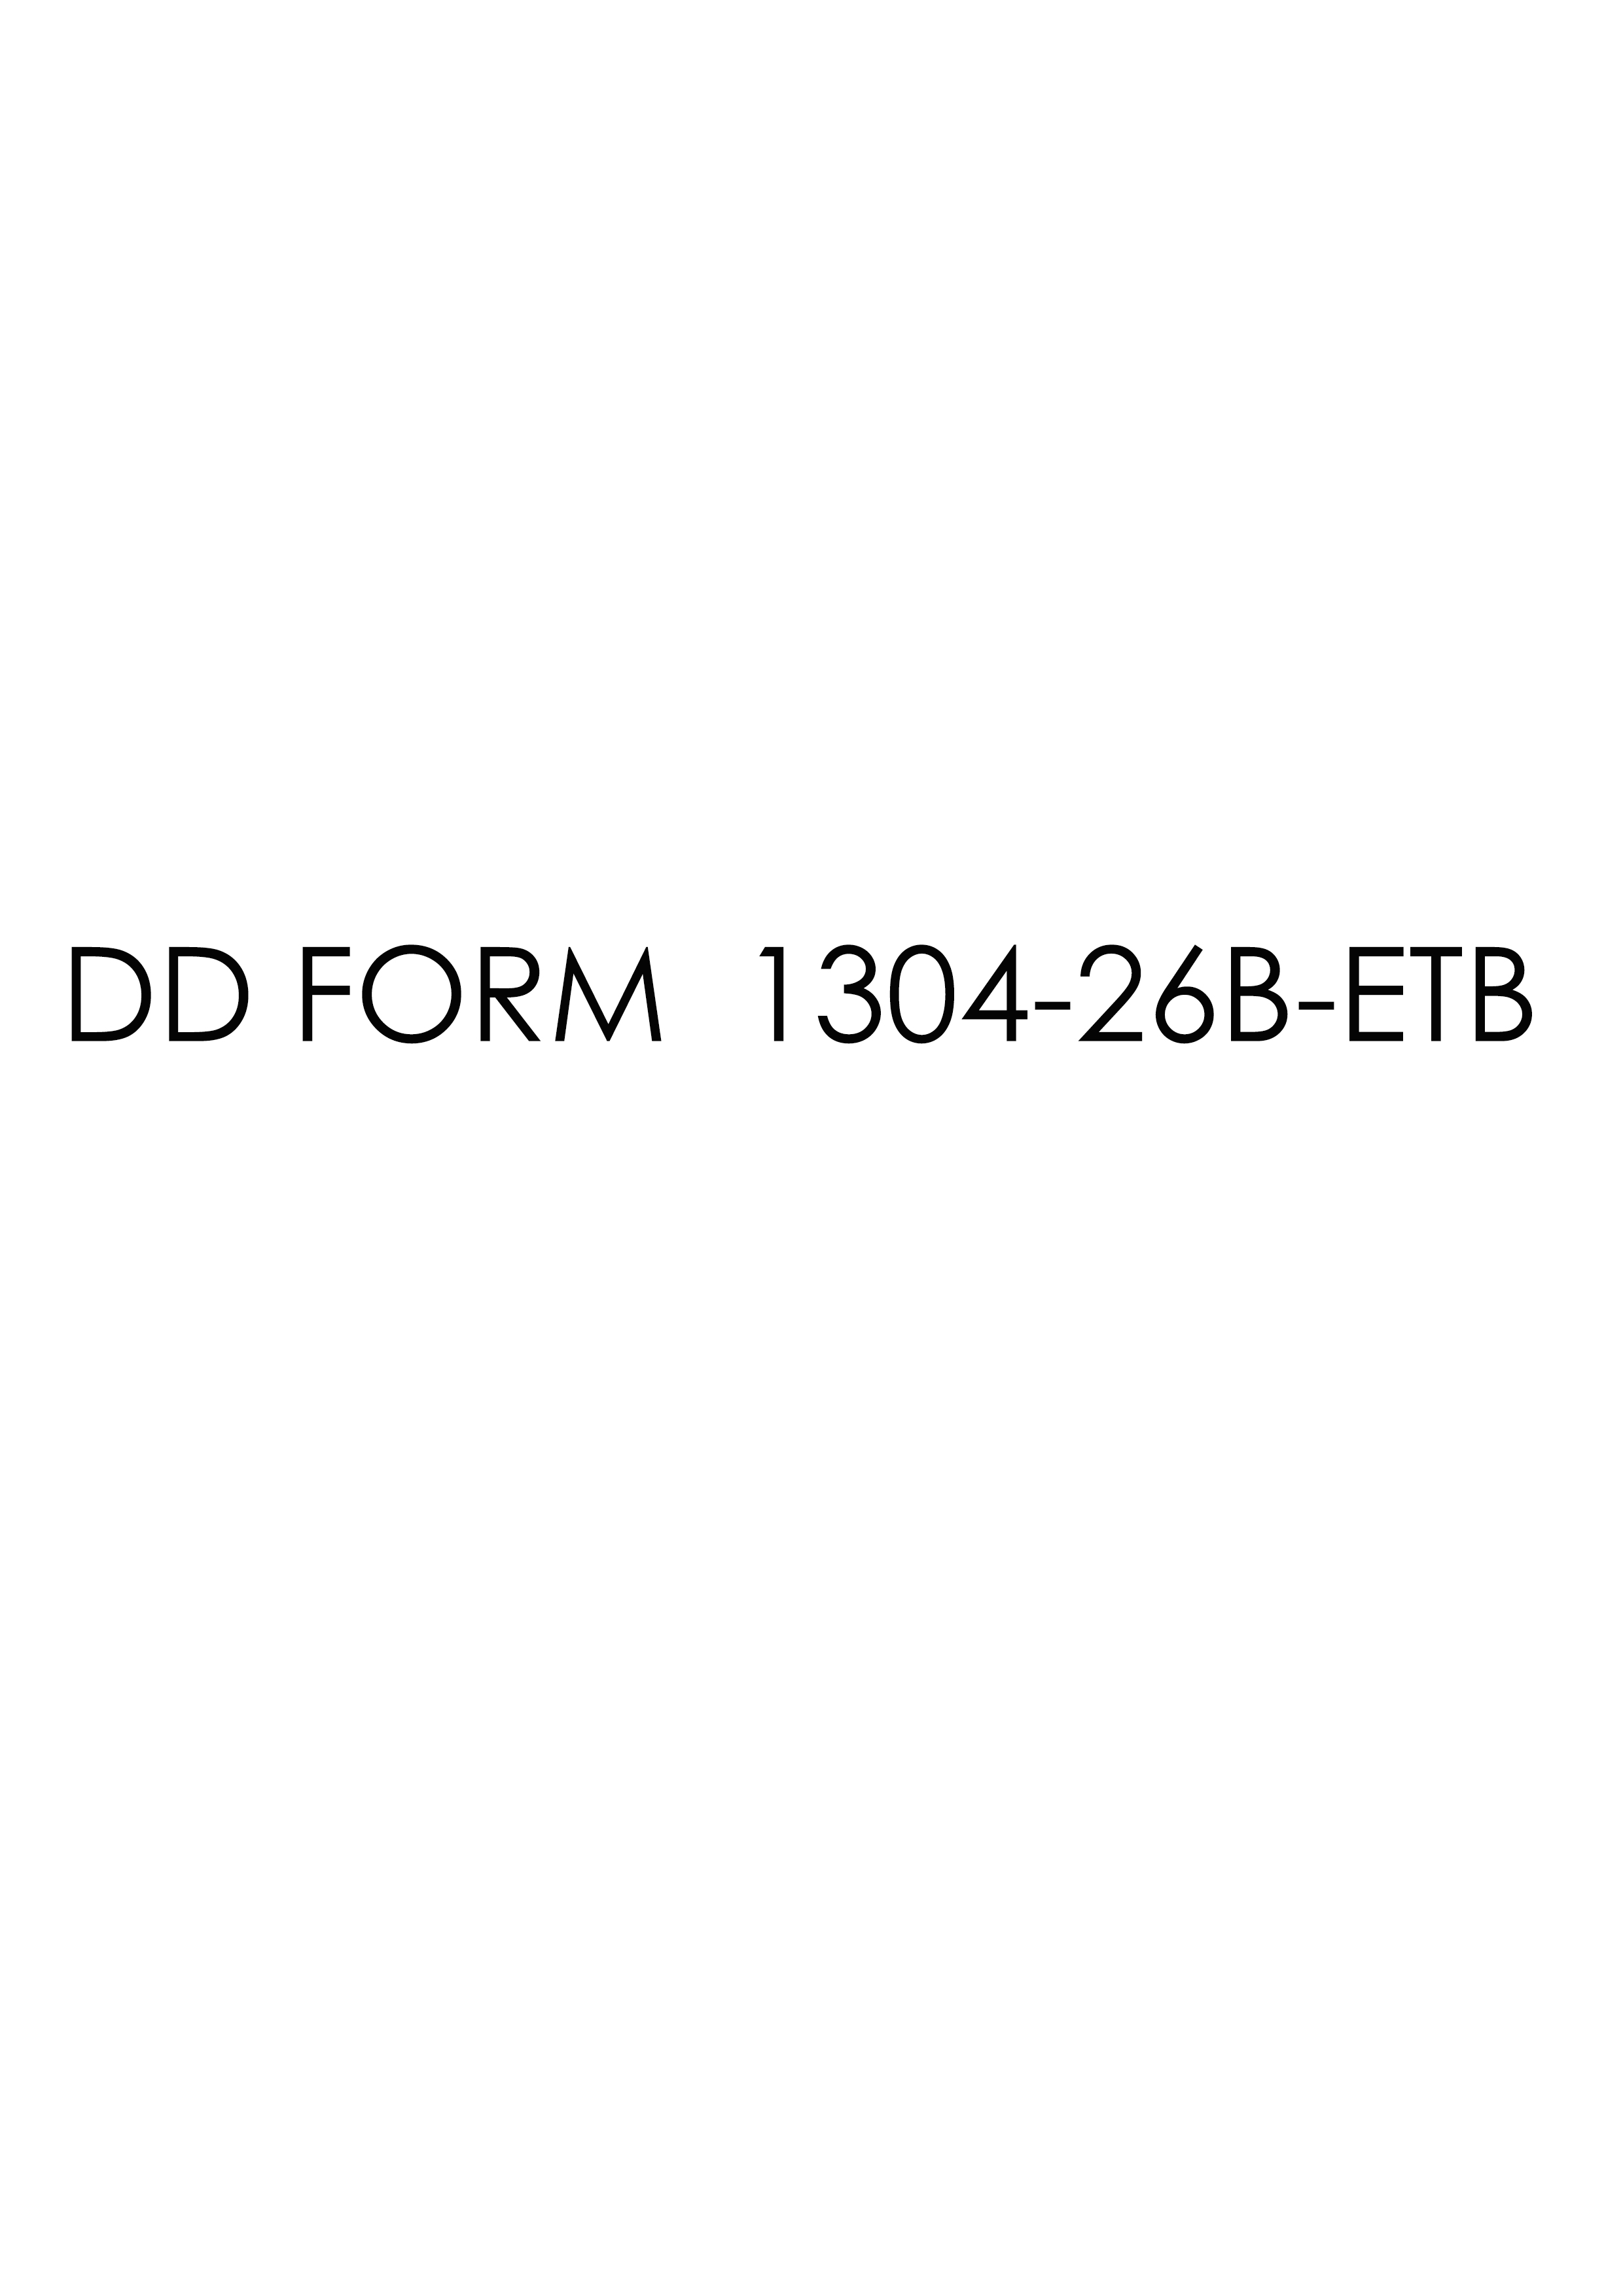 Download dd 1304-26B-ETB Form